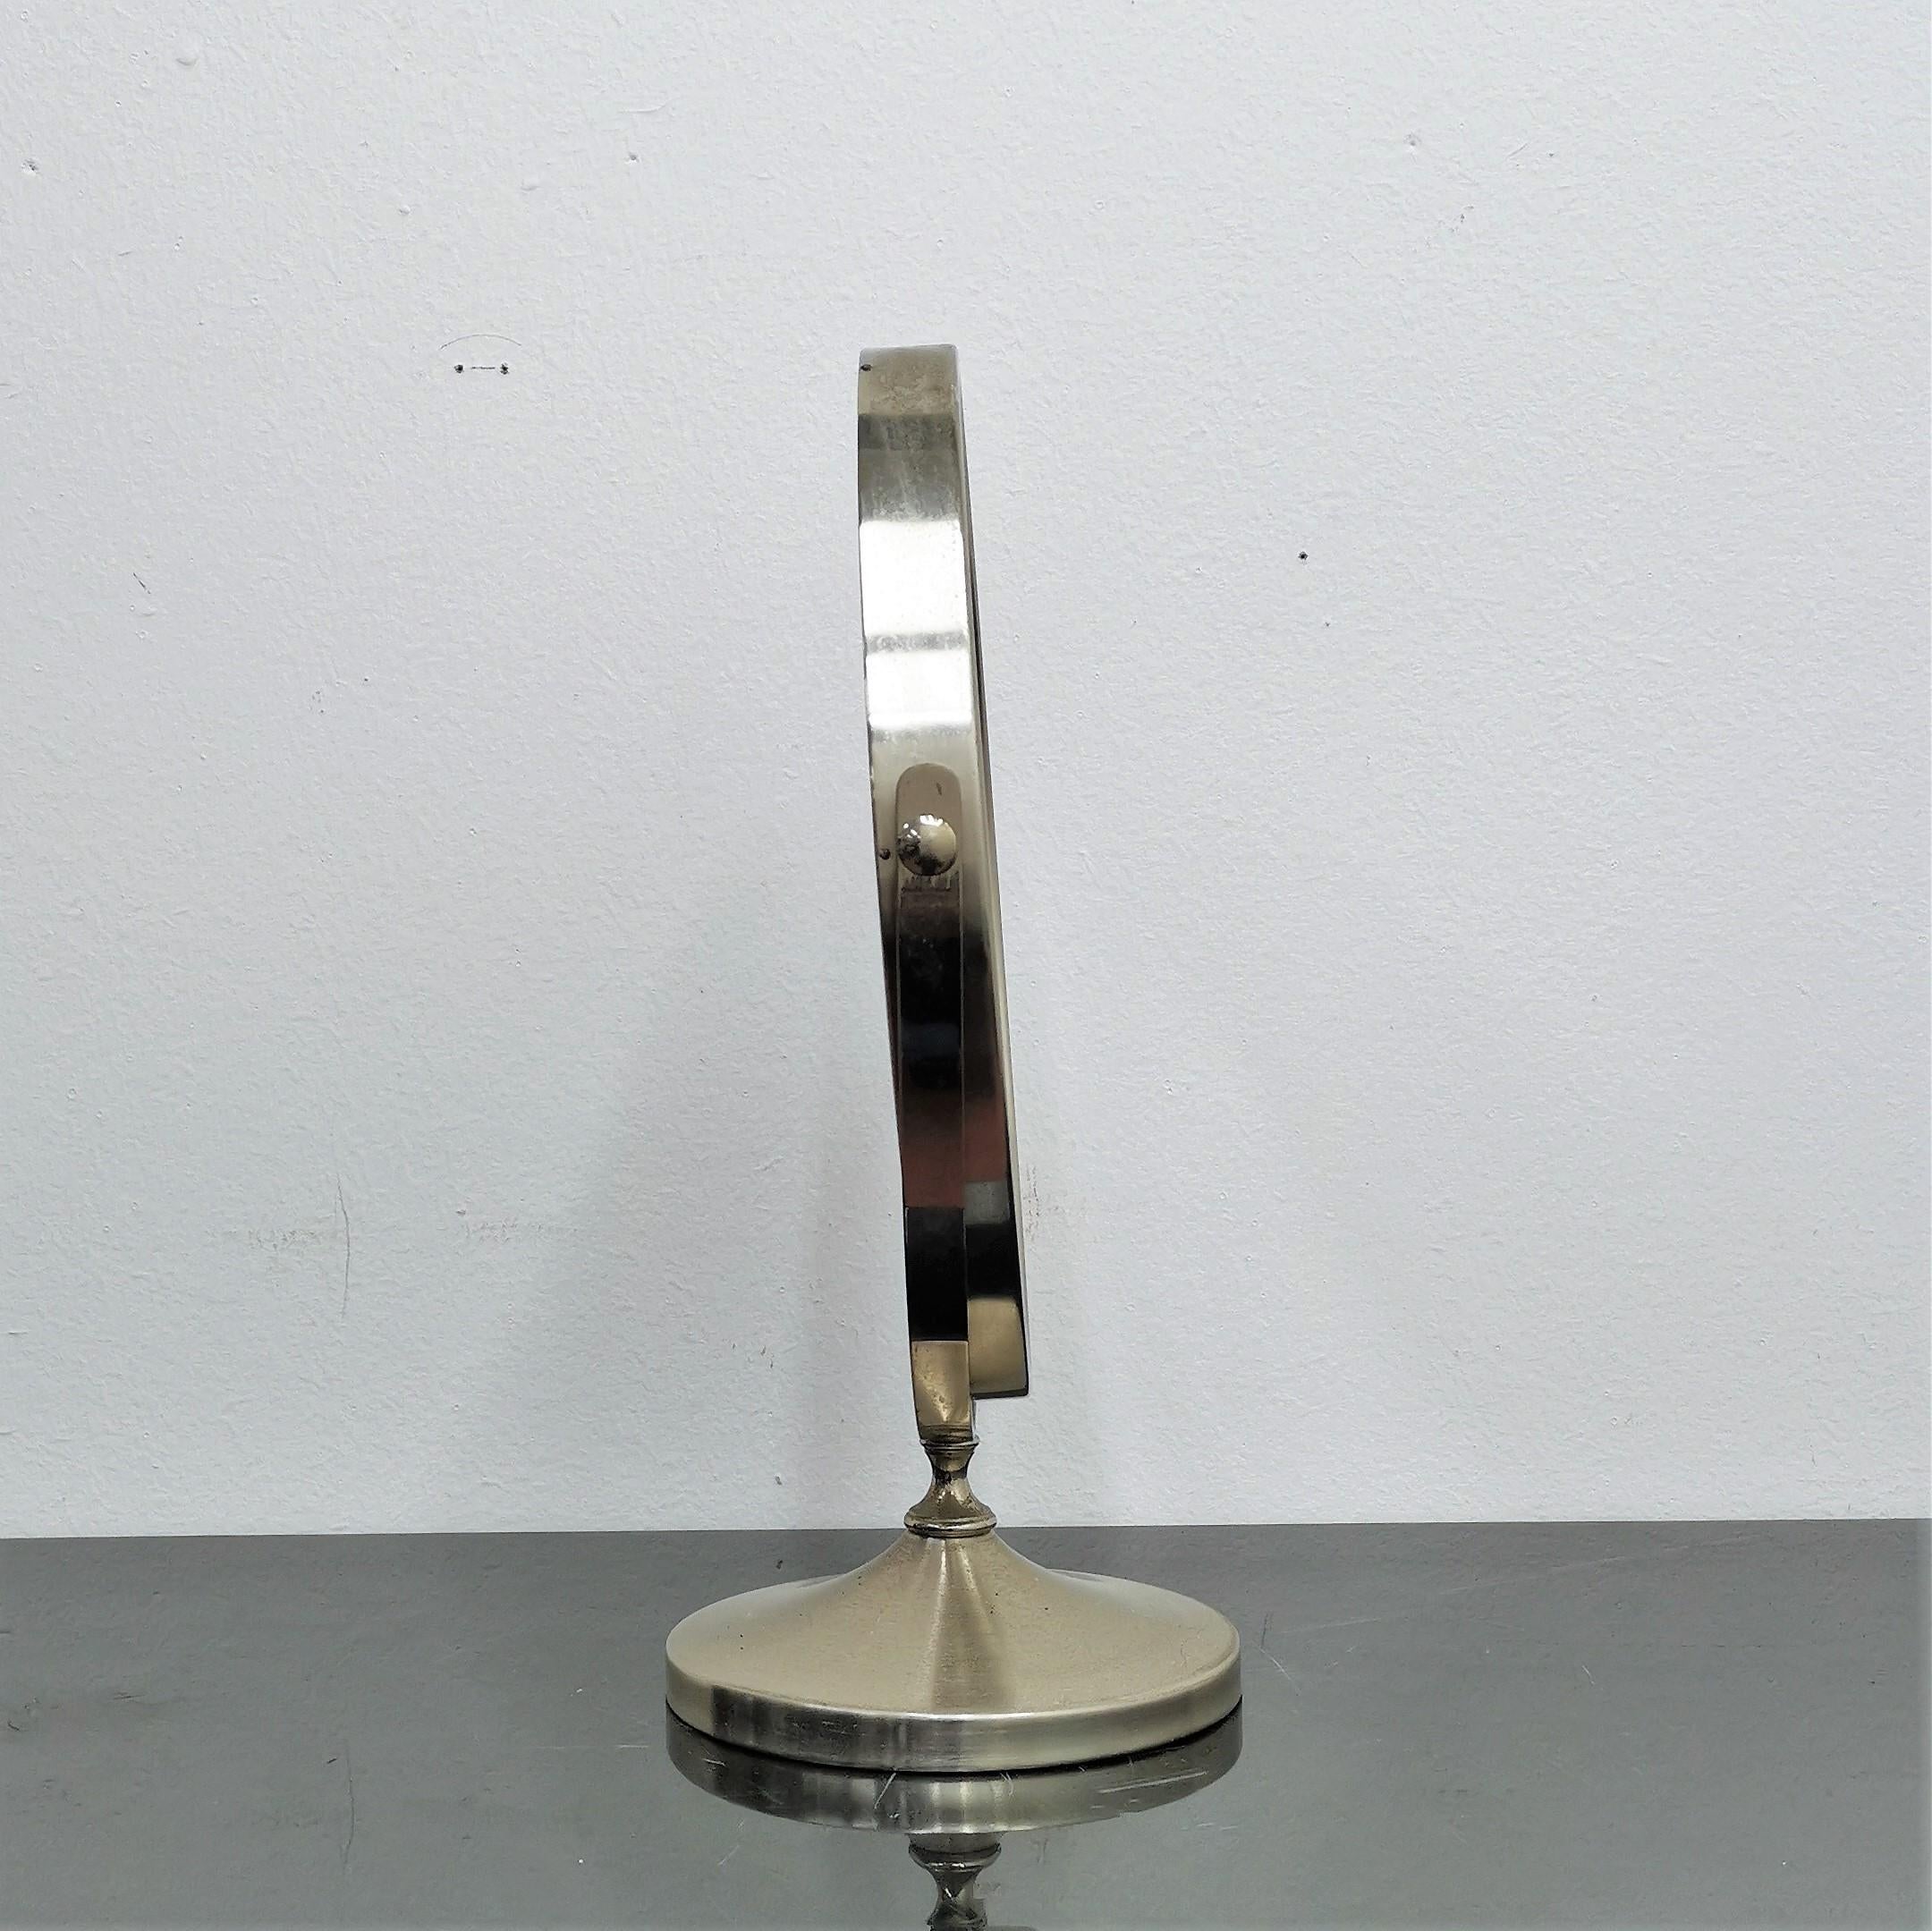 Miroir de table basculant en laiton nickelé modèle Narciso à Sergio Mazza pour Artemide vers 1960. Patine d'origine.
Usure conforme à l'âge et à l'utilisation.